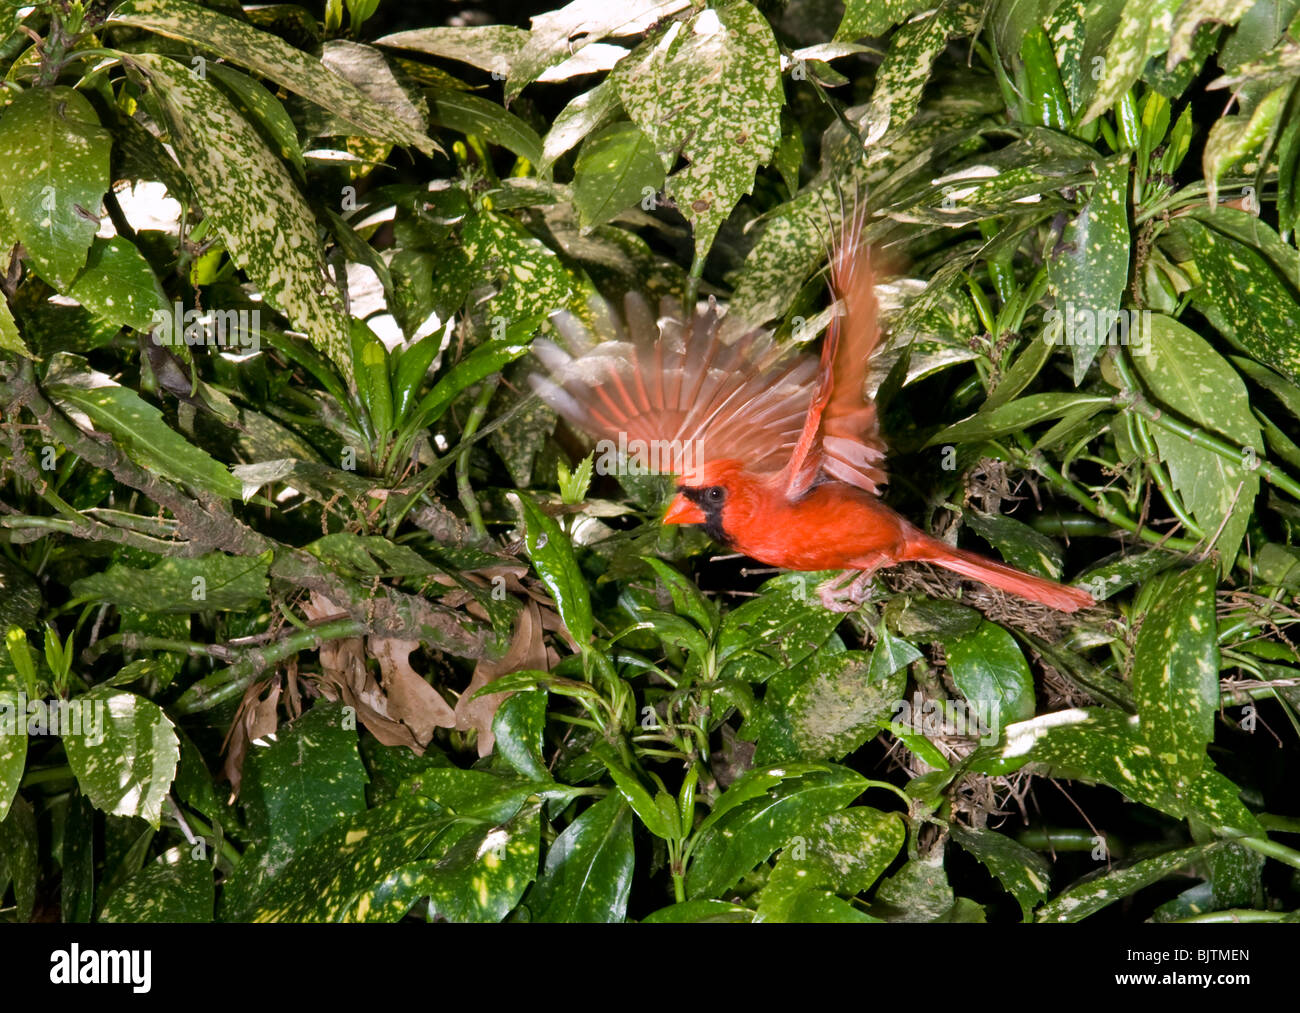 Un cardinal mâle (Cardinalis cardinalis) volant (Géorgie, USA). Banque D'Images